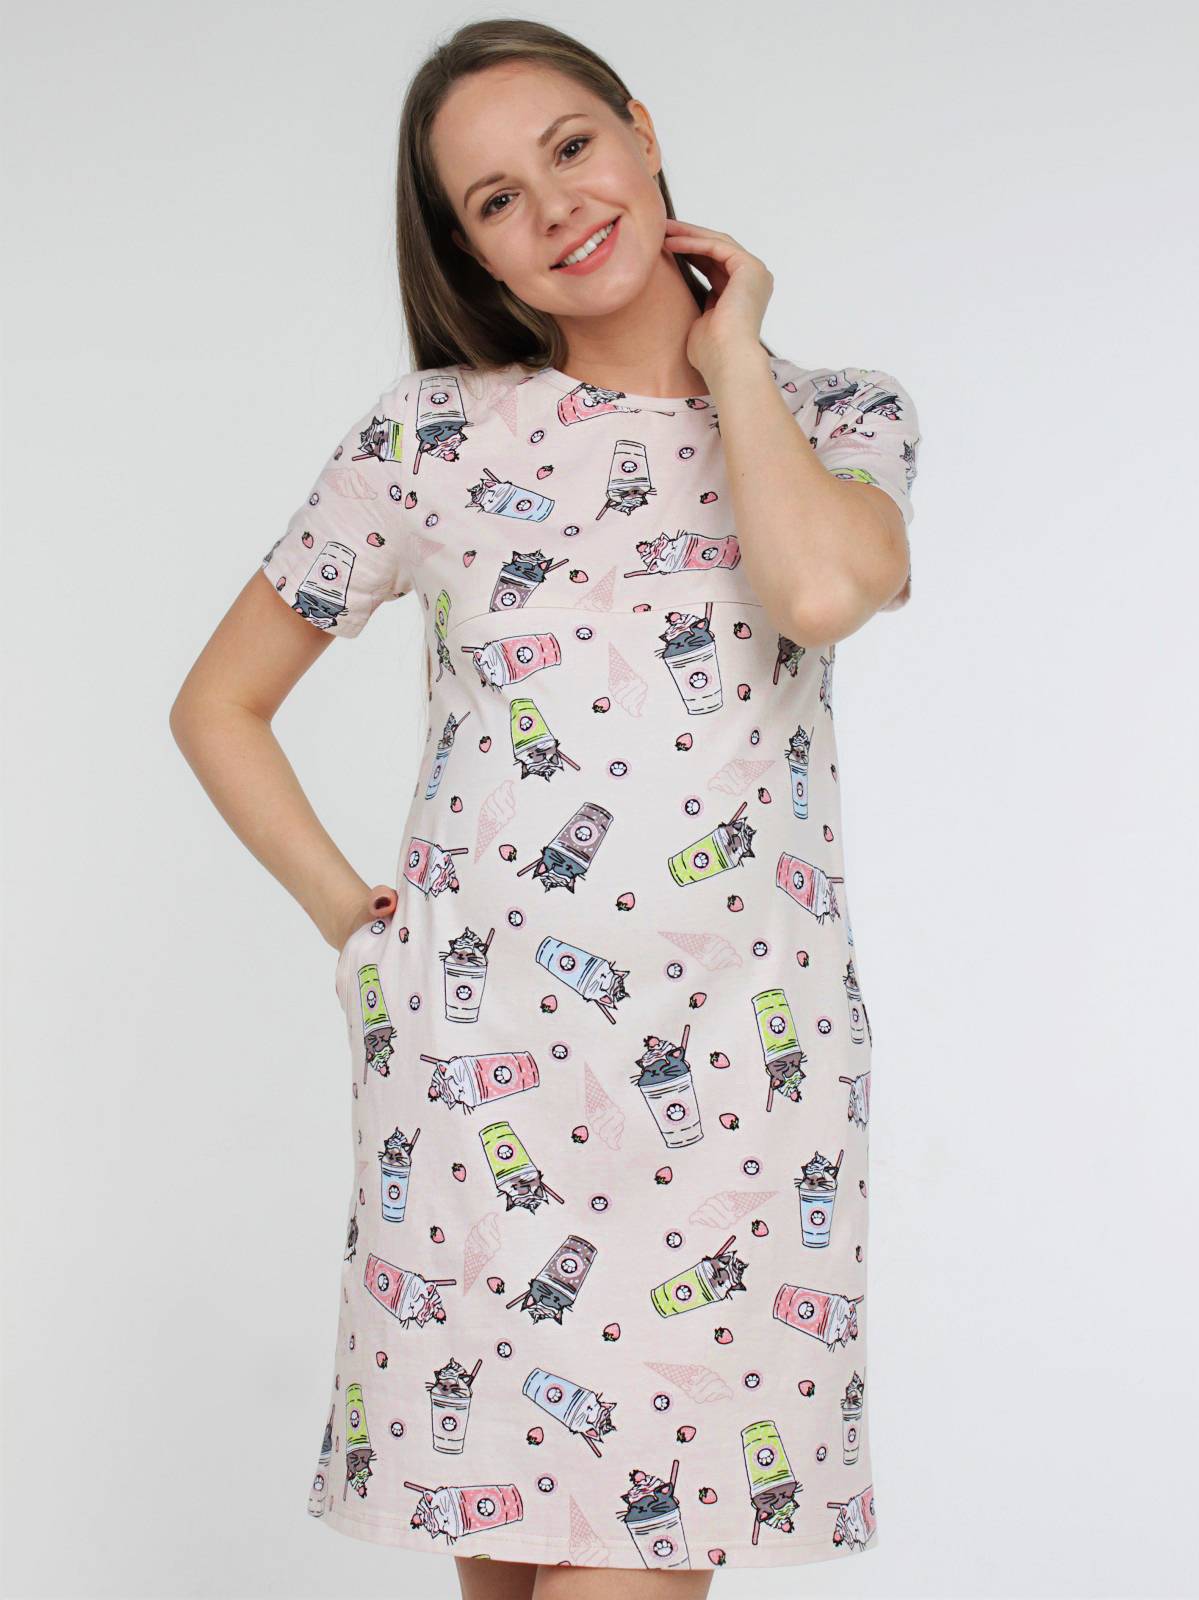 Сорочка для беременных и кормящих (домашнее платье) арт. 355070 бежевое